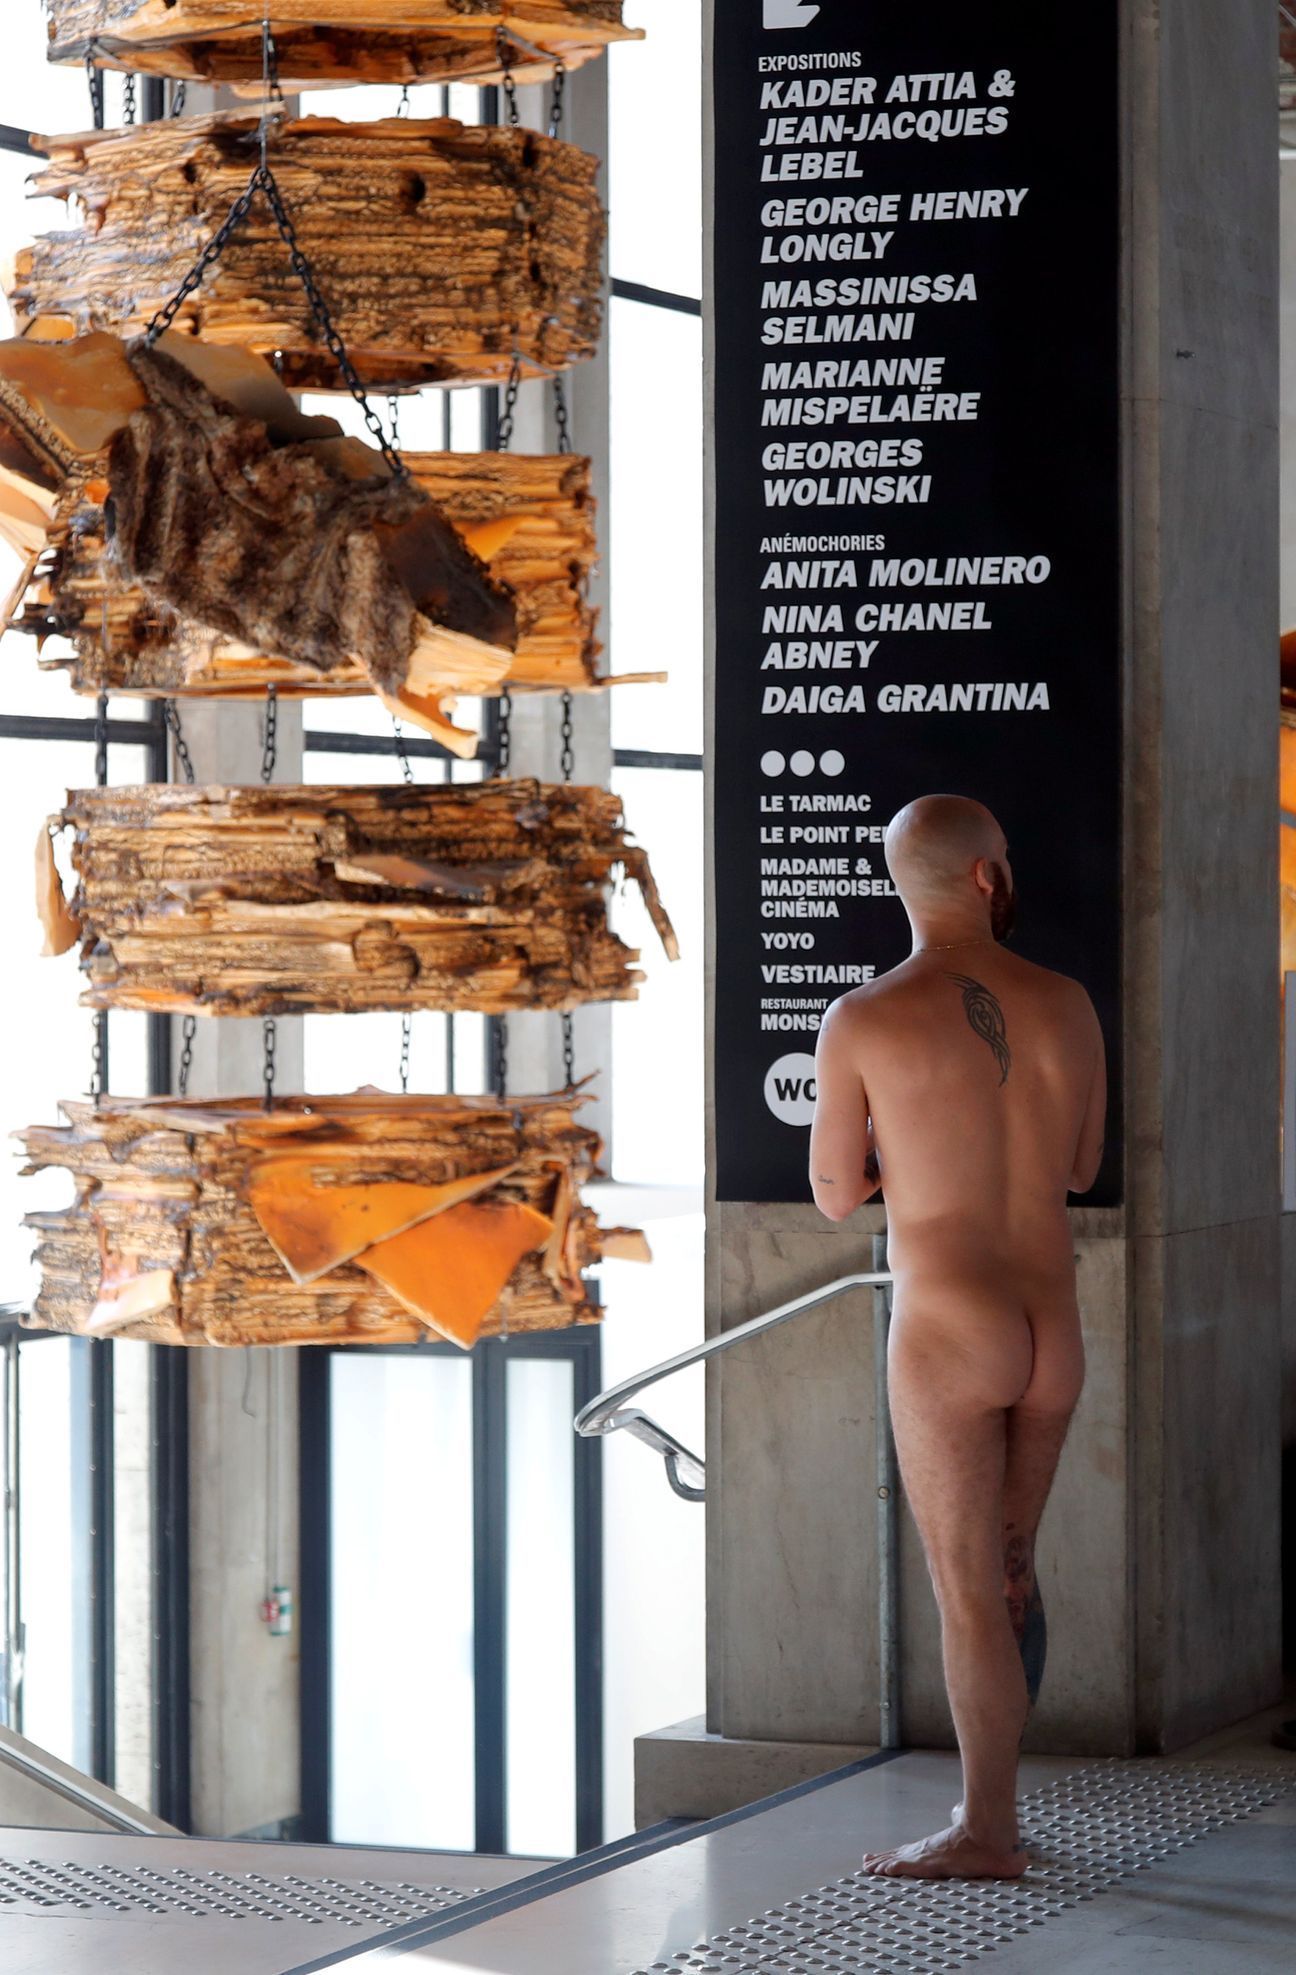 Pařížská galerie se otevřel nudistům